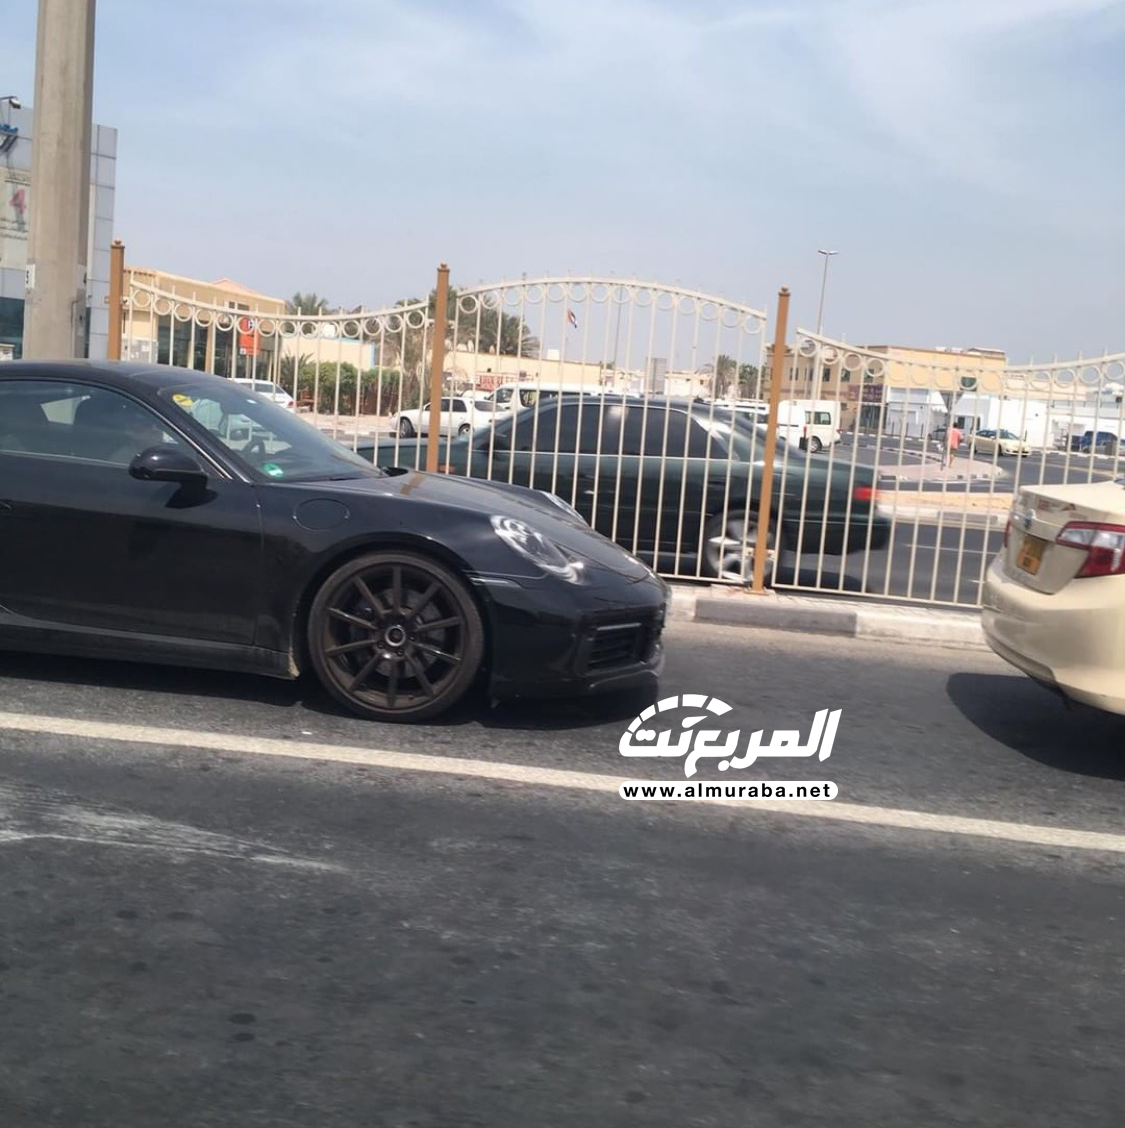 "بالصور" بورش 911 الجديدة كلياً تختبر نفسها في شوارع مدينة دبي 4